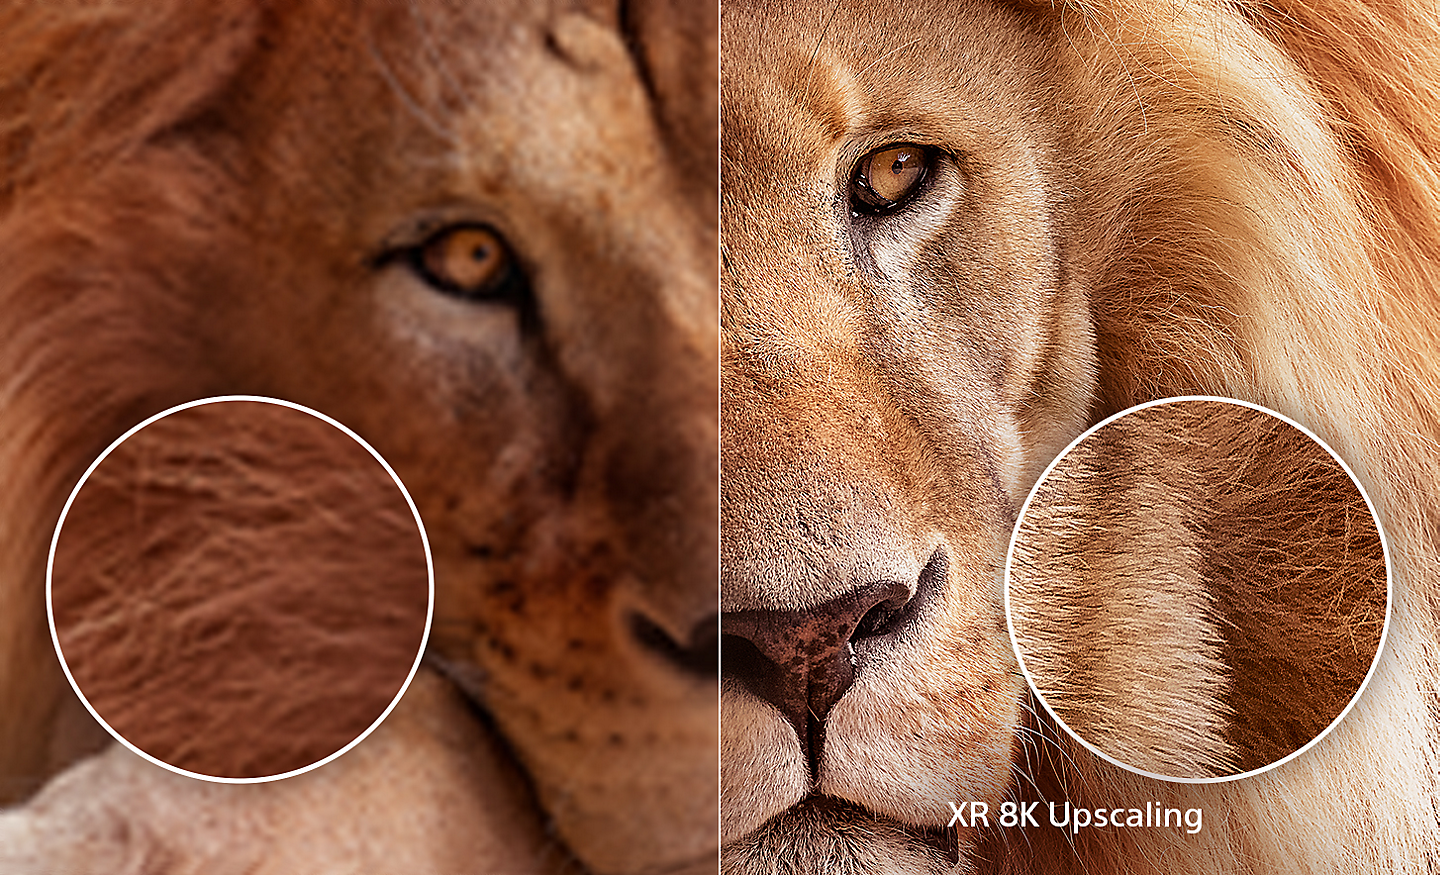 Écran divisé affichant la tête d’un lion, le côté droit montrant des détails supplémentaires après utilisation de l’interpolation XR 8K